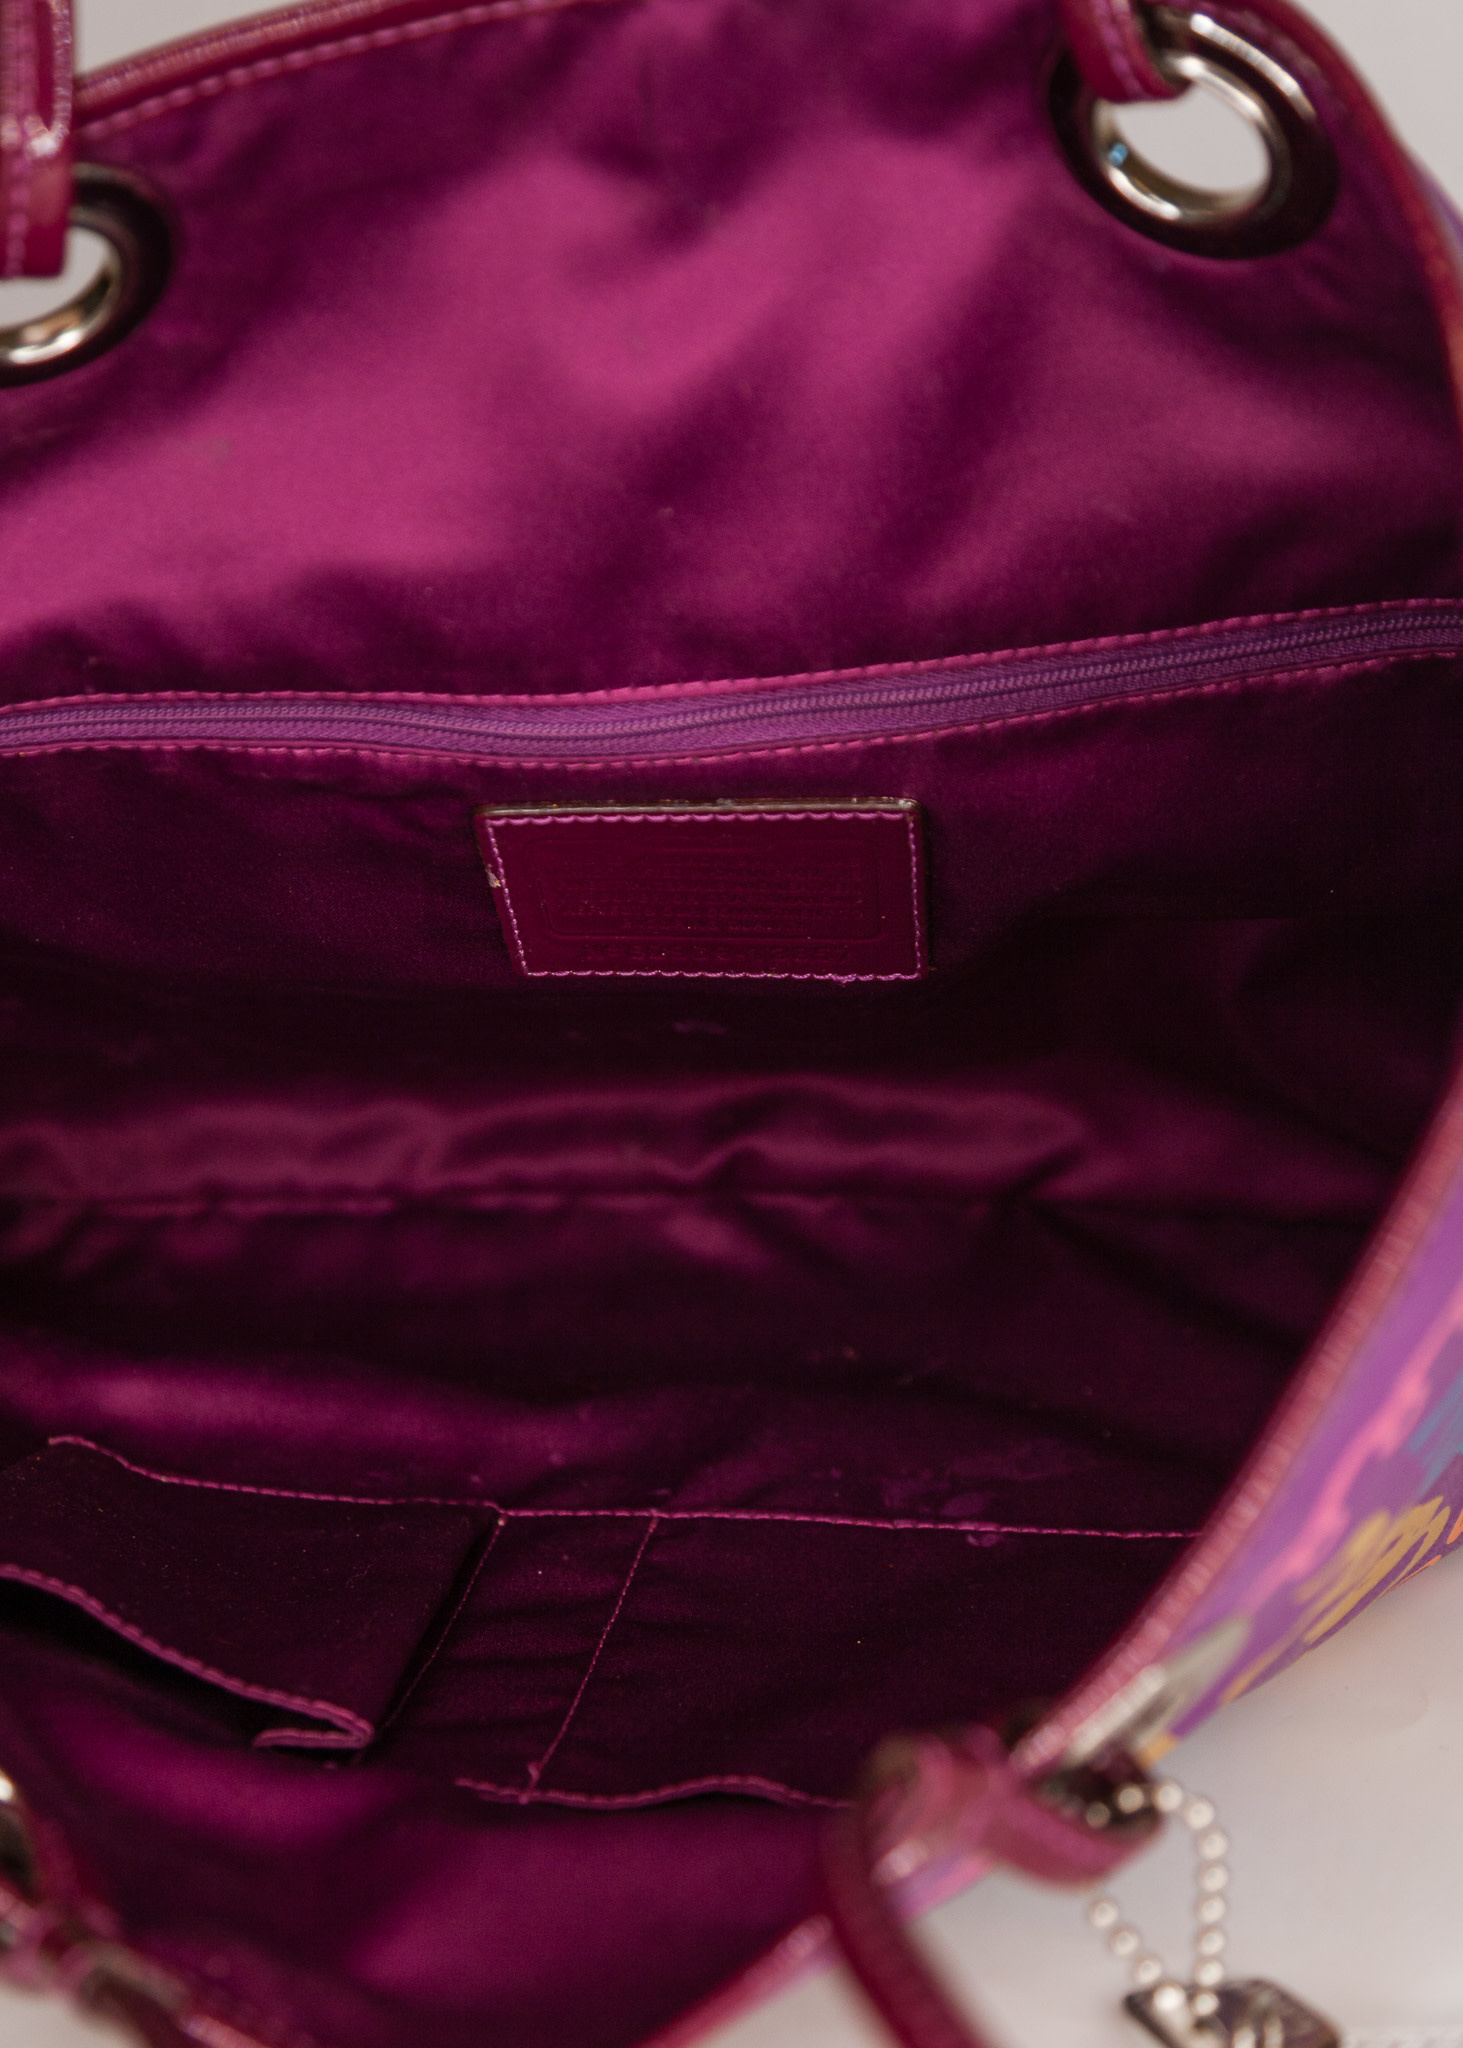 Vintage Coach Purse Y2K Shoulder Bag Zoe Signature Hobo Purple Monogram  Lilac | eBay